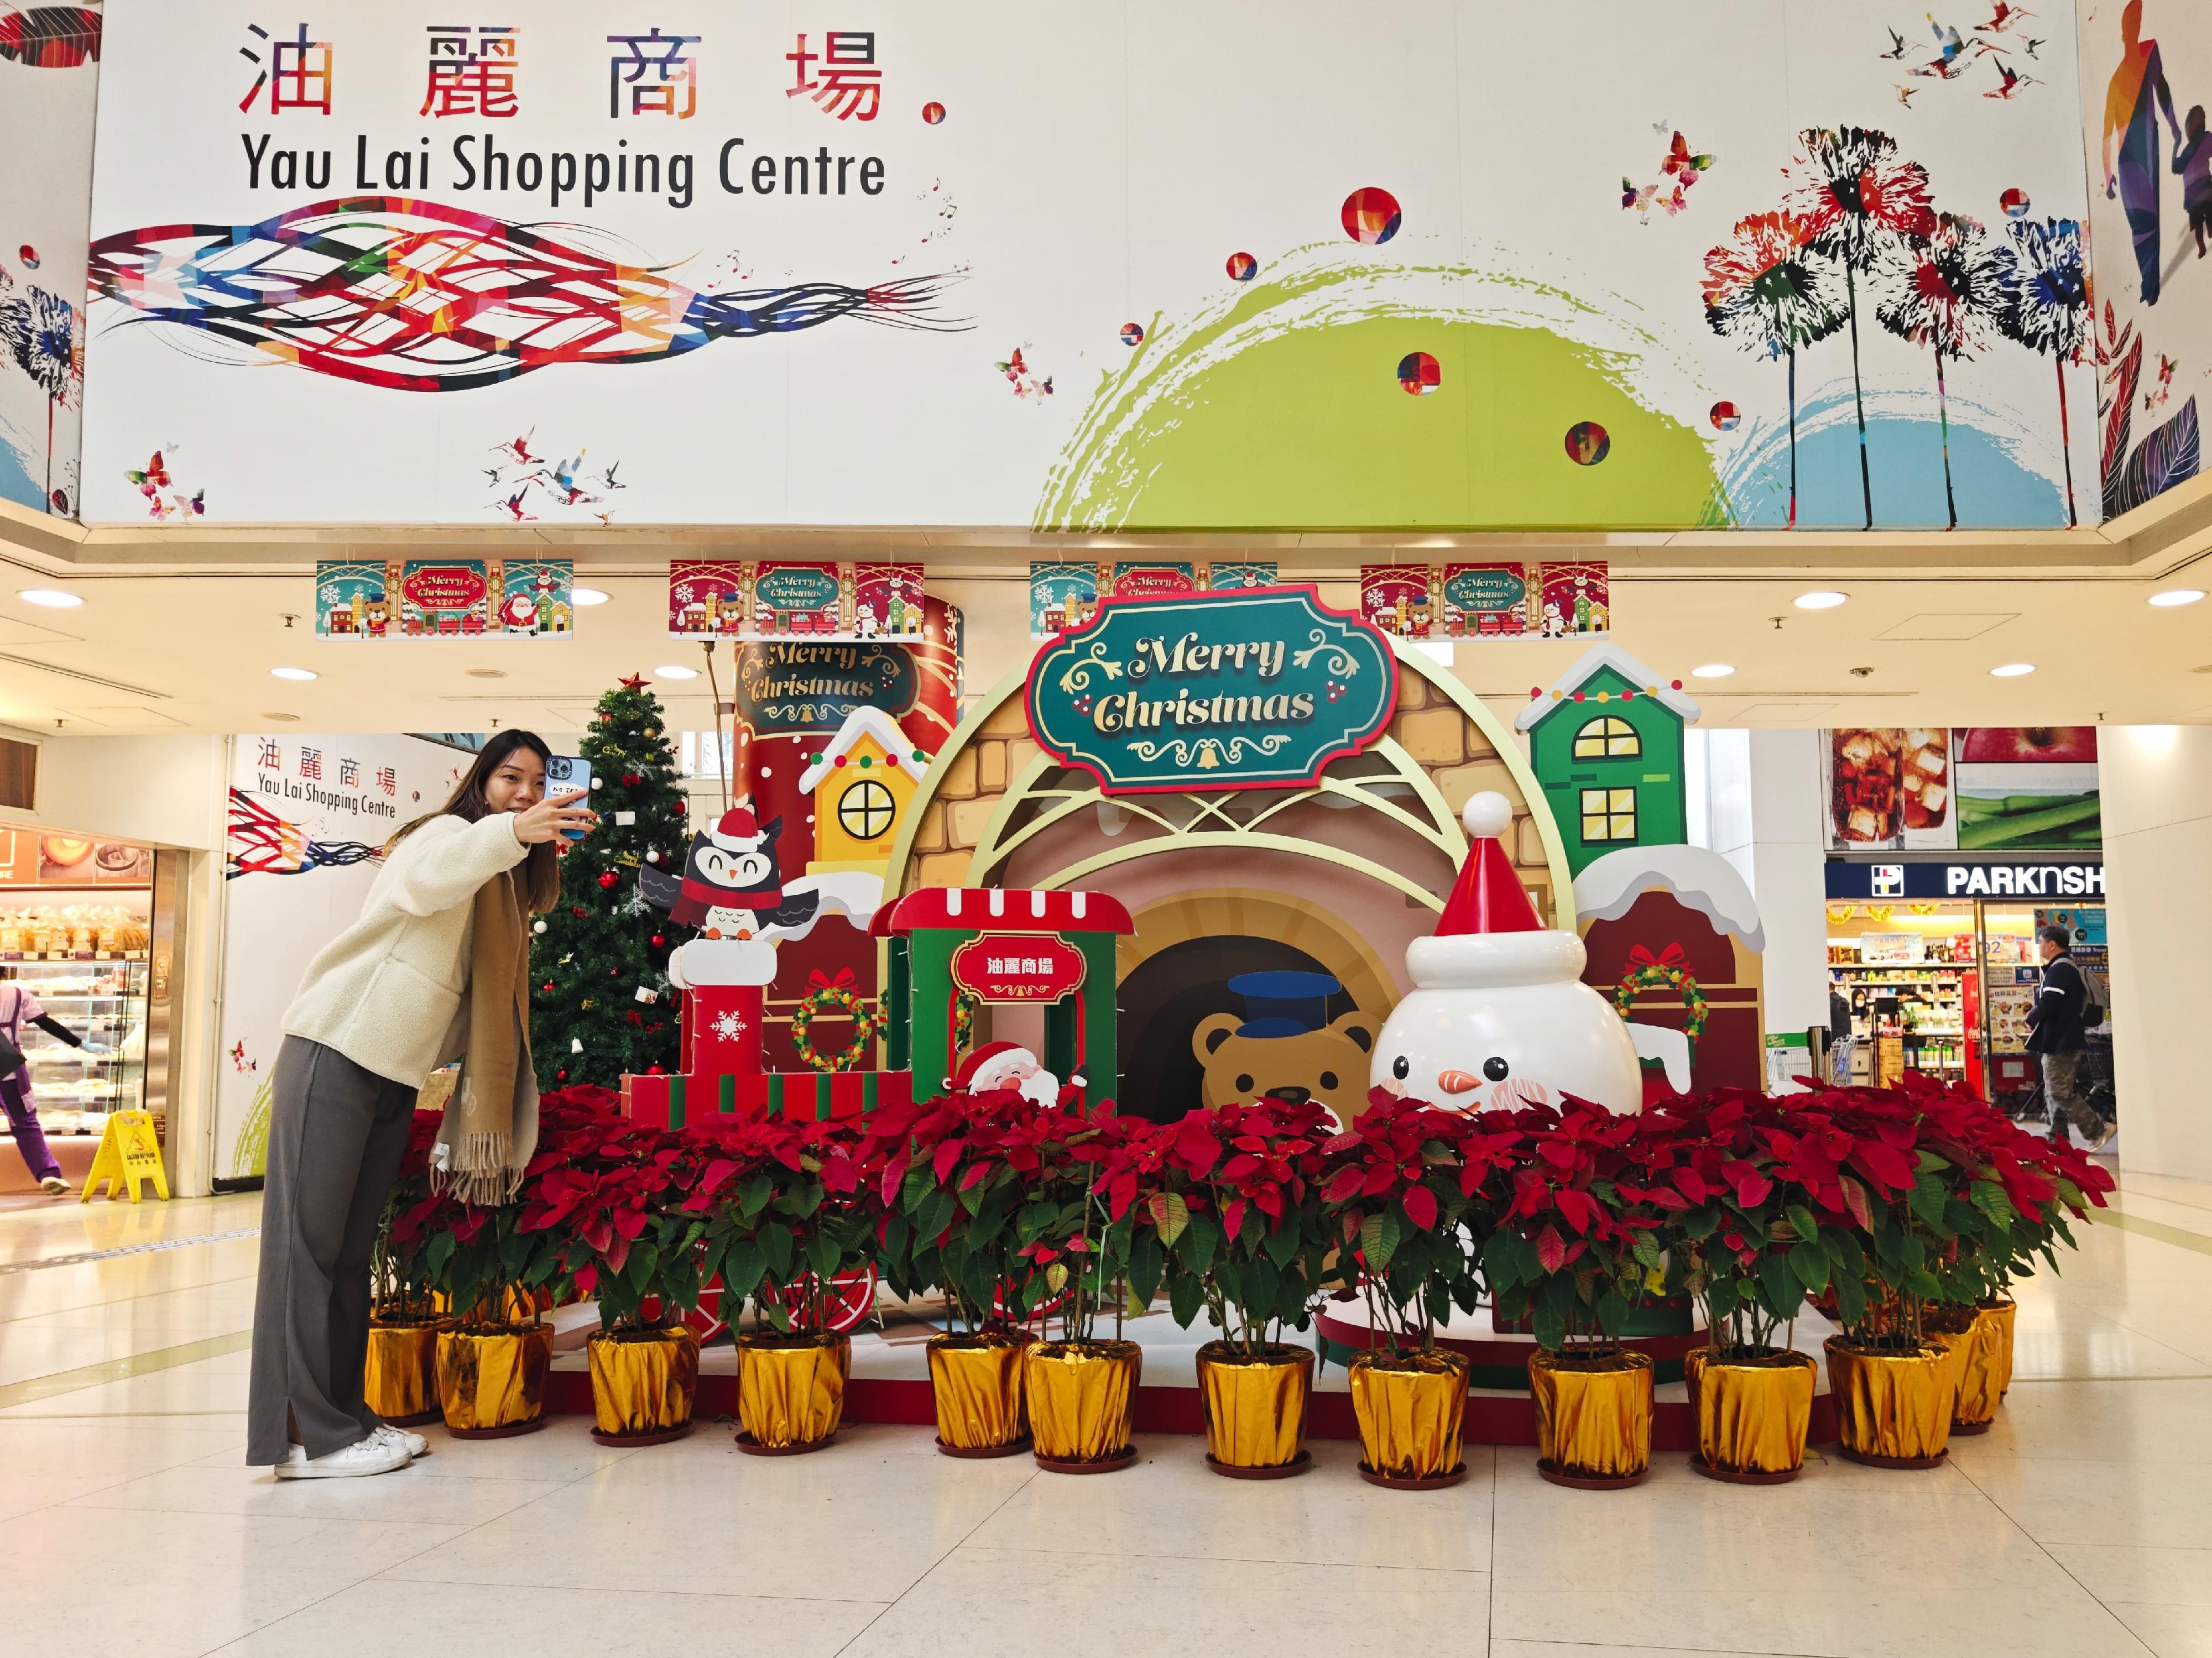 香港房屋委員會（房委會）於轄下多個商場舉辦聖誕節推廣及夜繽紛活動，與市民歡度聖誕。圖示房委會觀塘油麗商場的聖誕節裝飾。